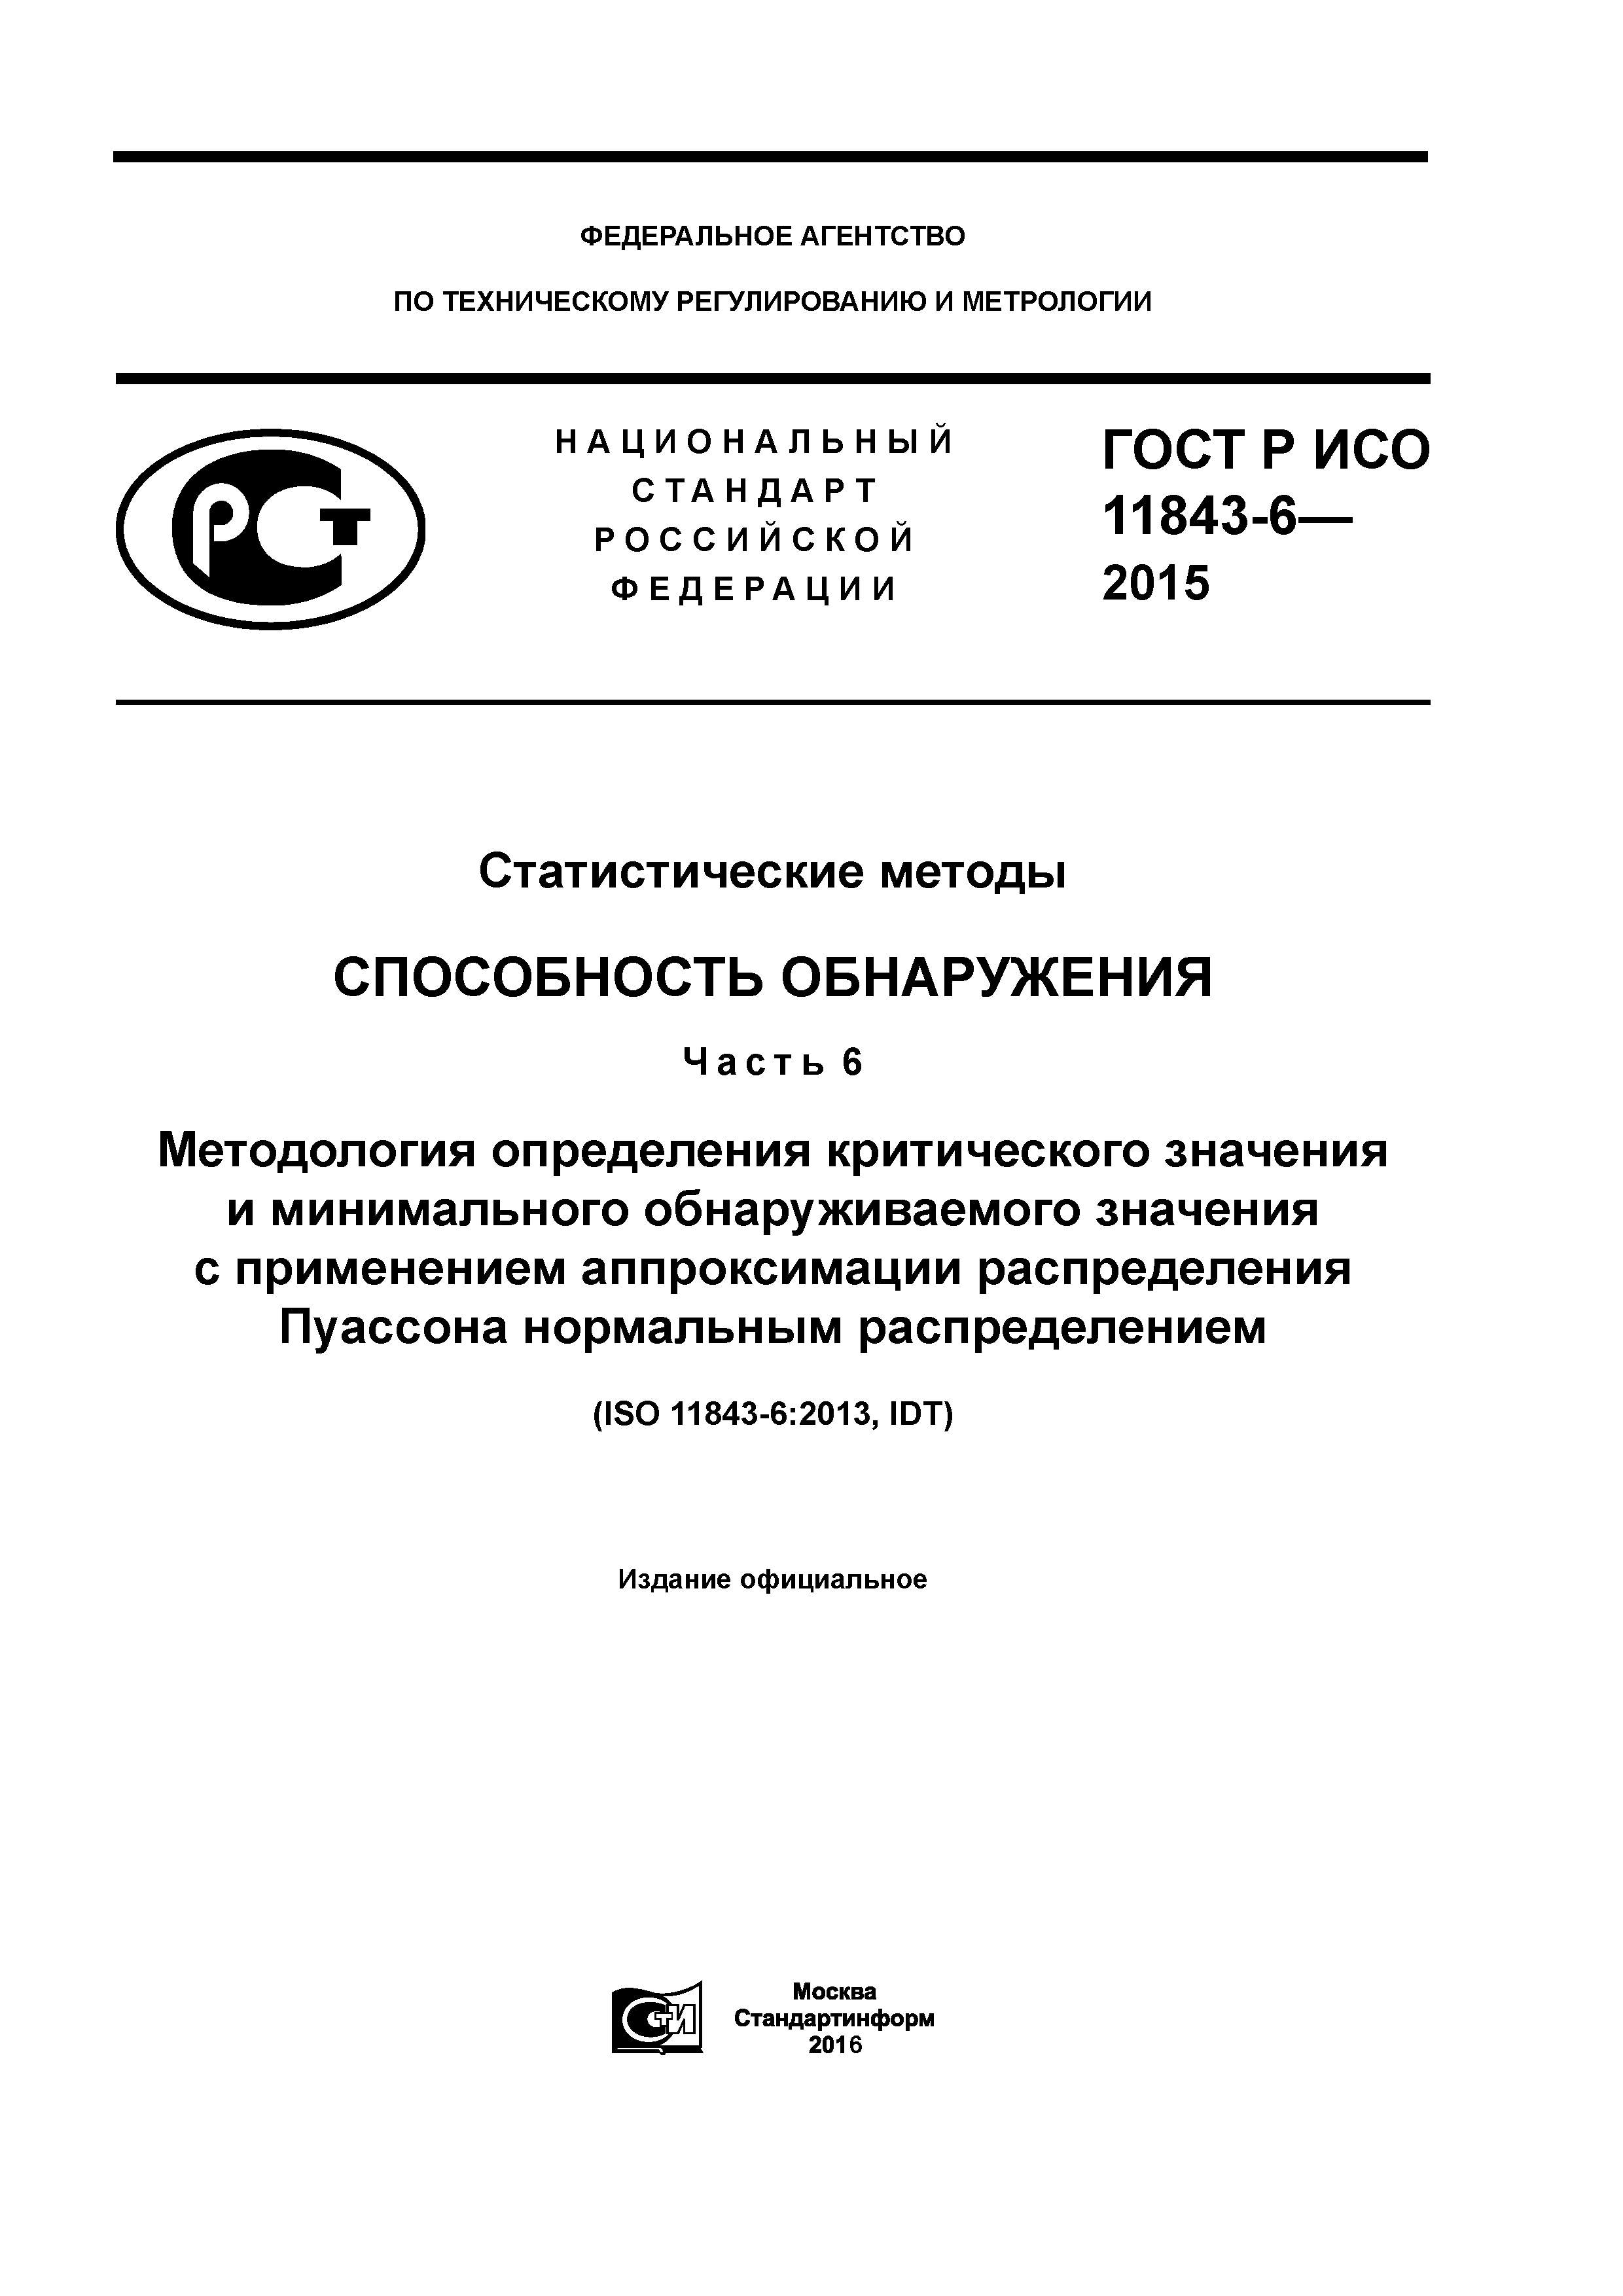 ГОСТ Р ИСО 11843-6-2015